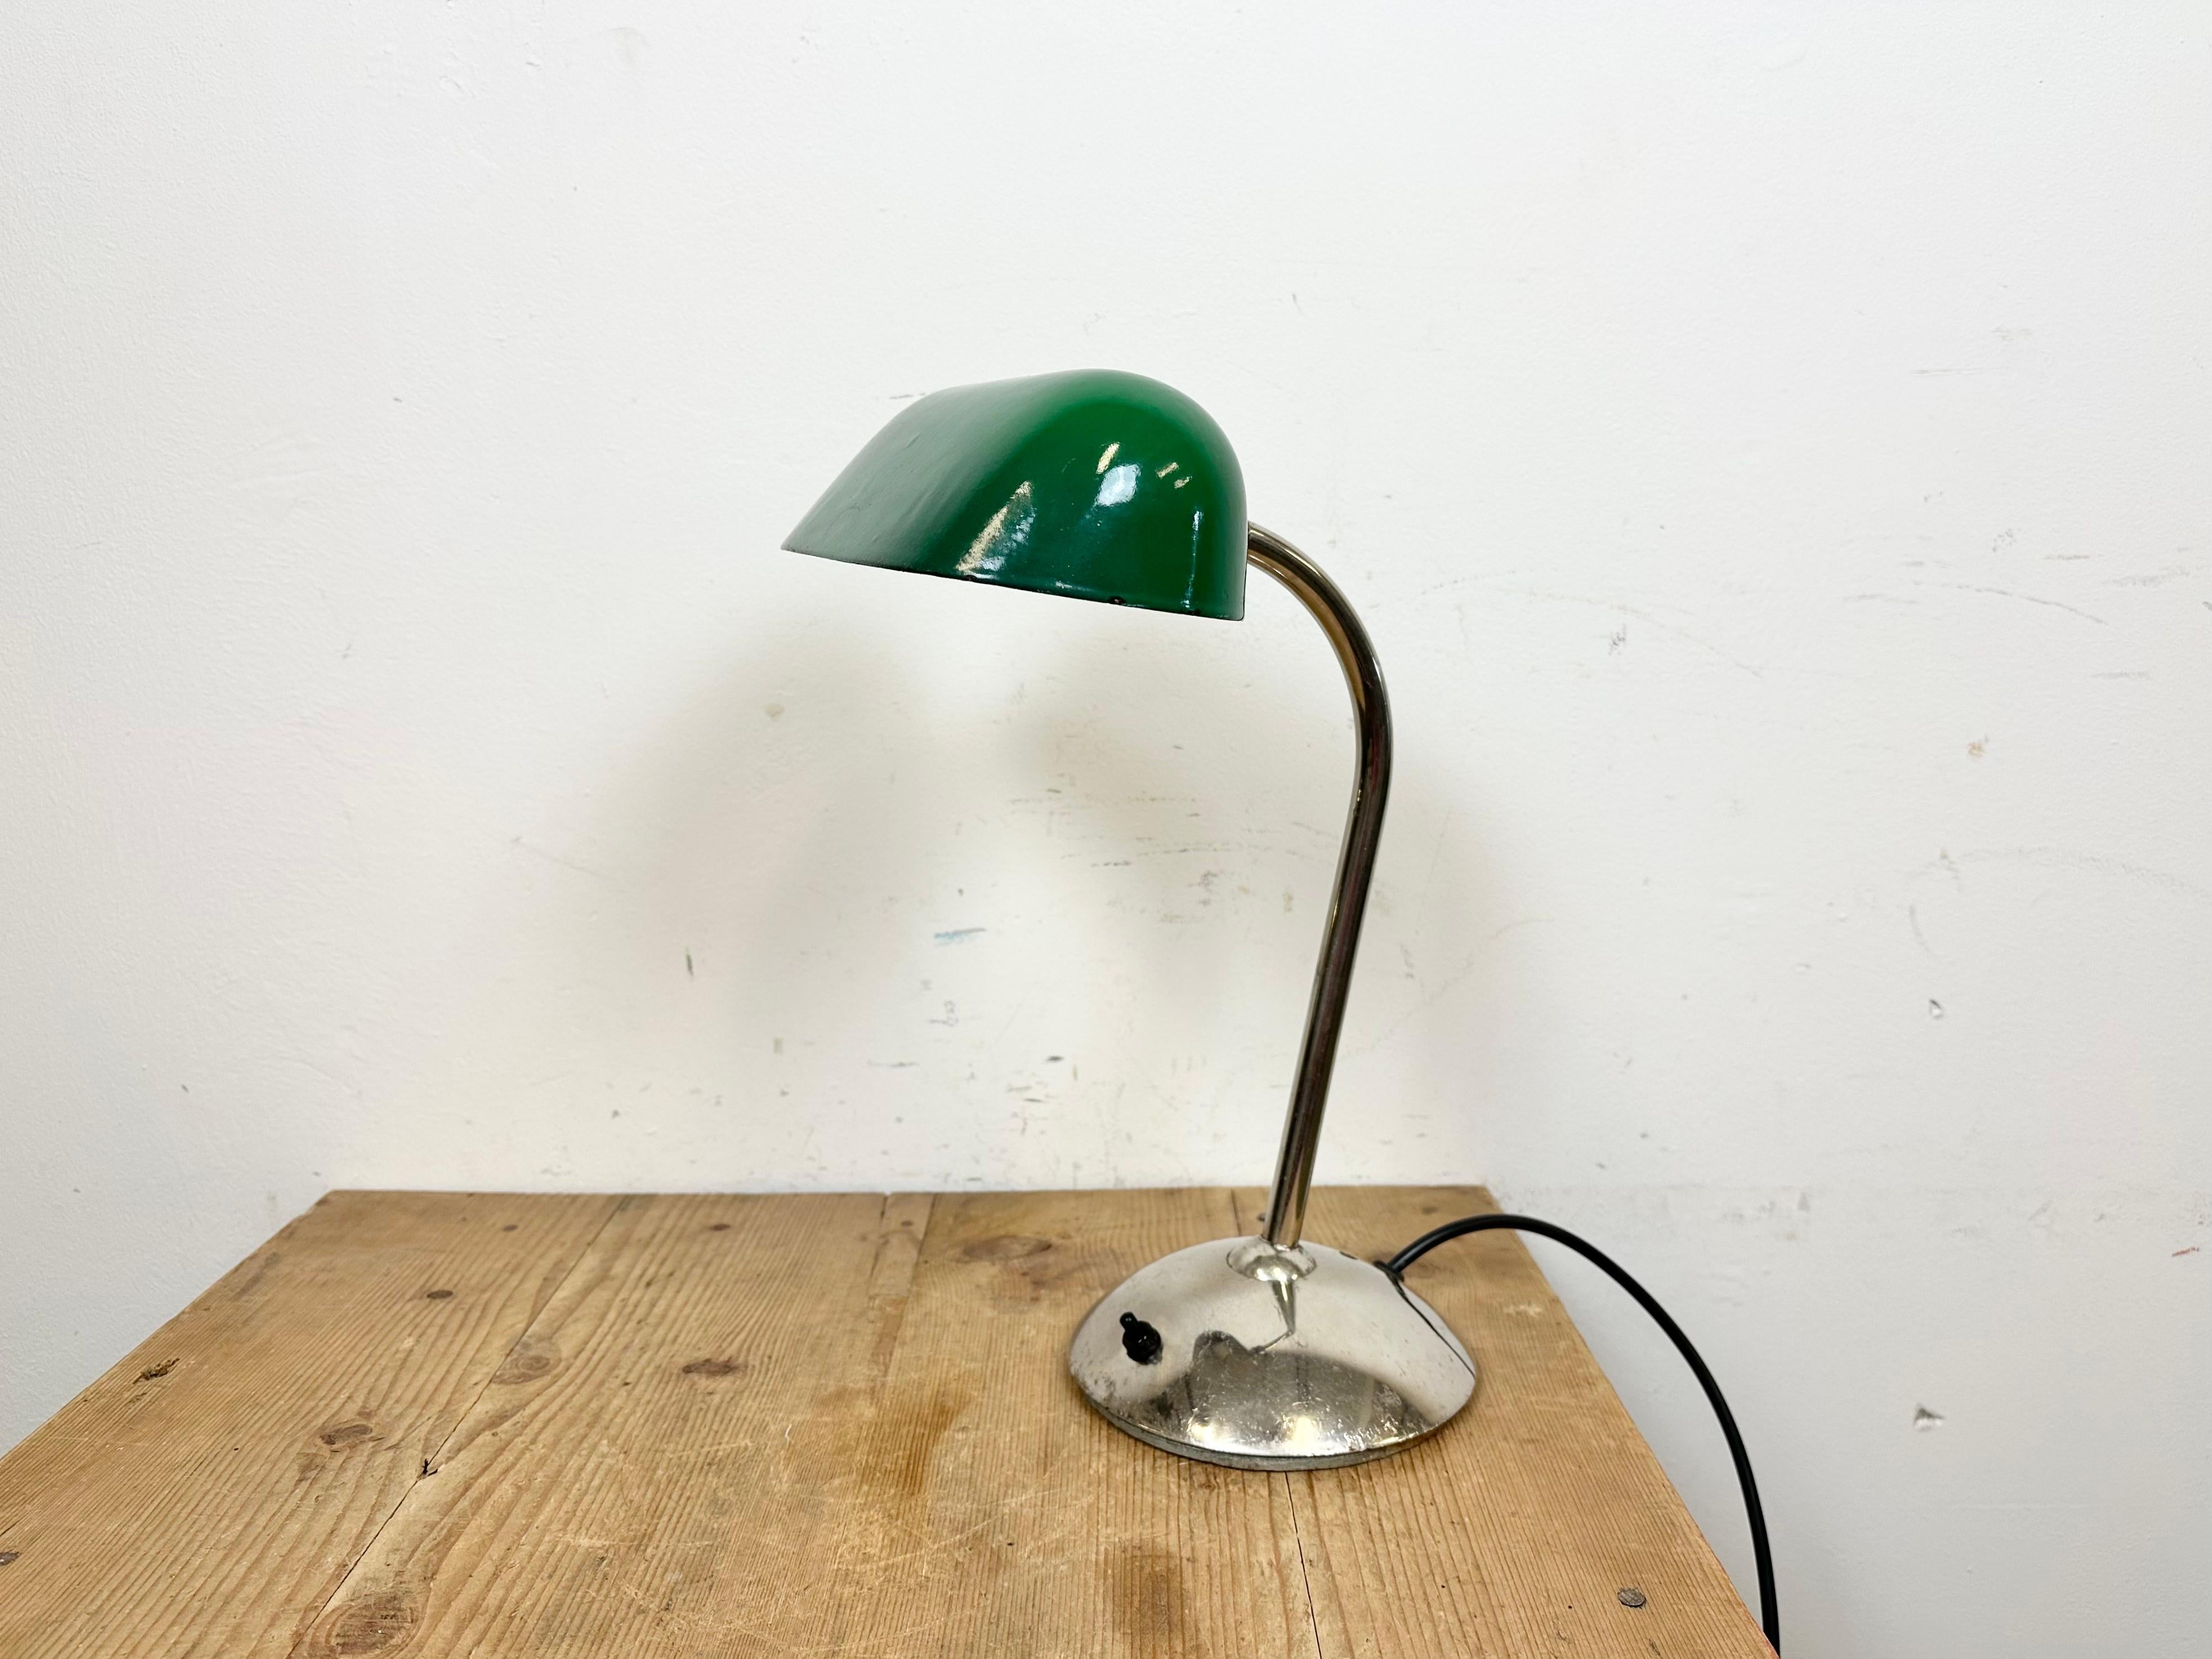 Cette lampe de table verte a été fabriquée dans l'ancienne Tchécoslovaquie dans les années 1950. Elle présente un abat-jour en émail vert avec un intérieur en émail blanc ainsi qu'une base et un bras en fer chromé avec deux articulations réglables.